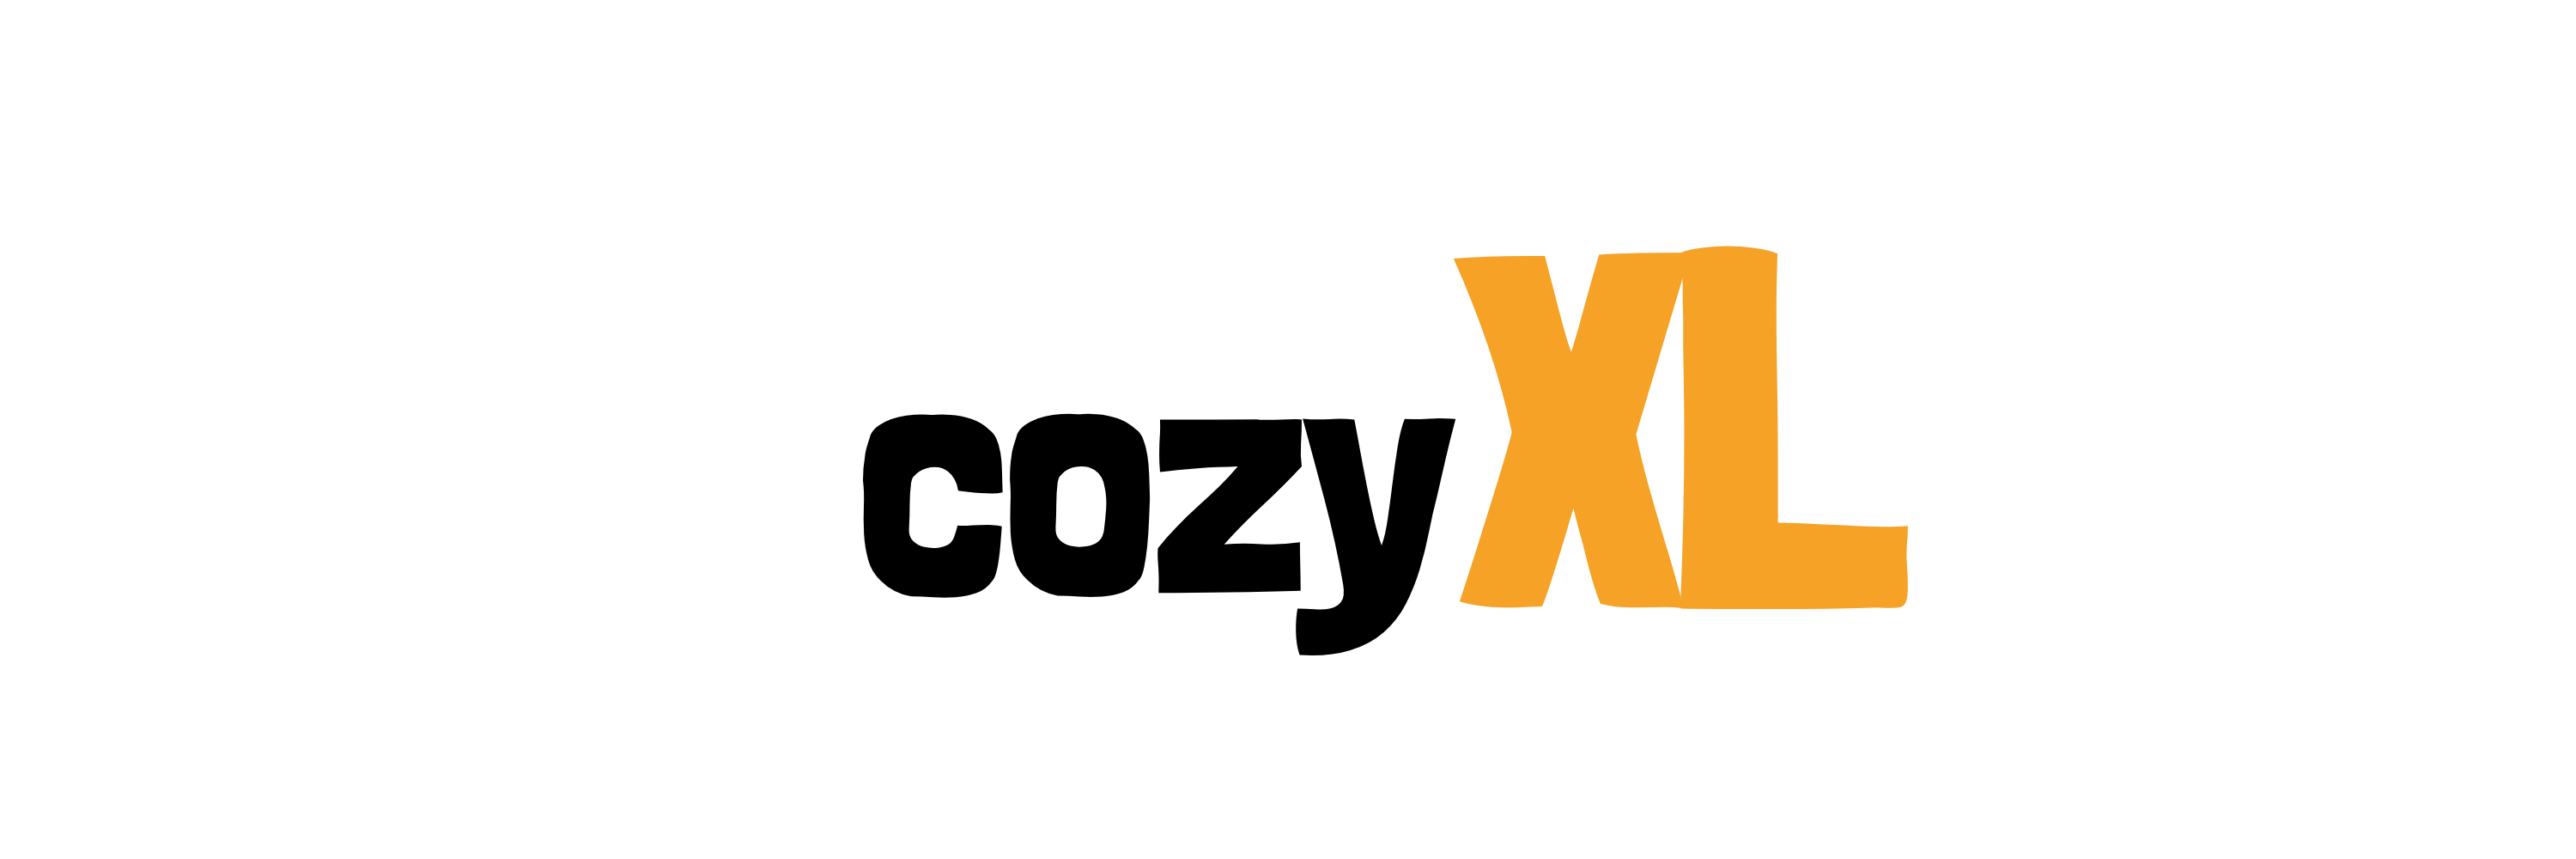 Cozy-XL